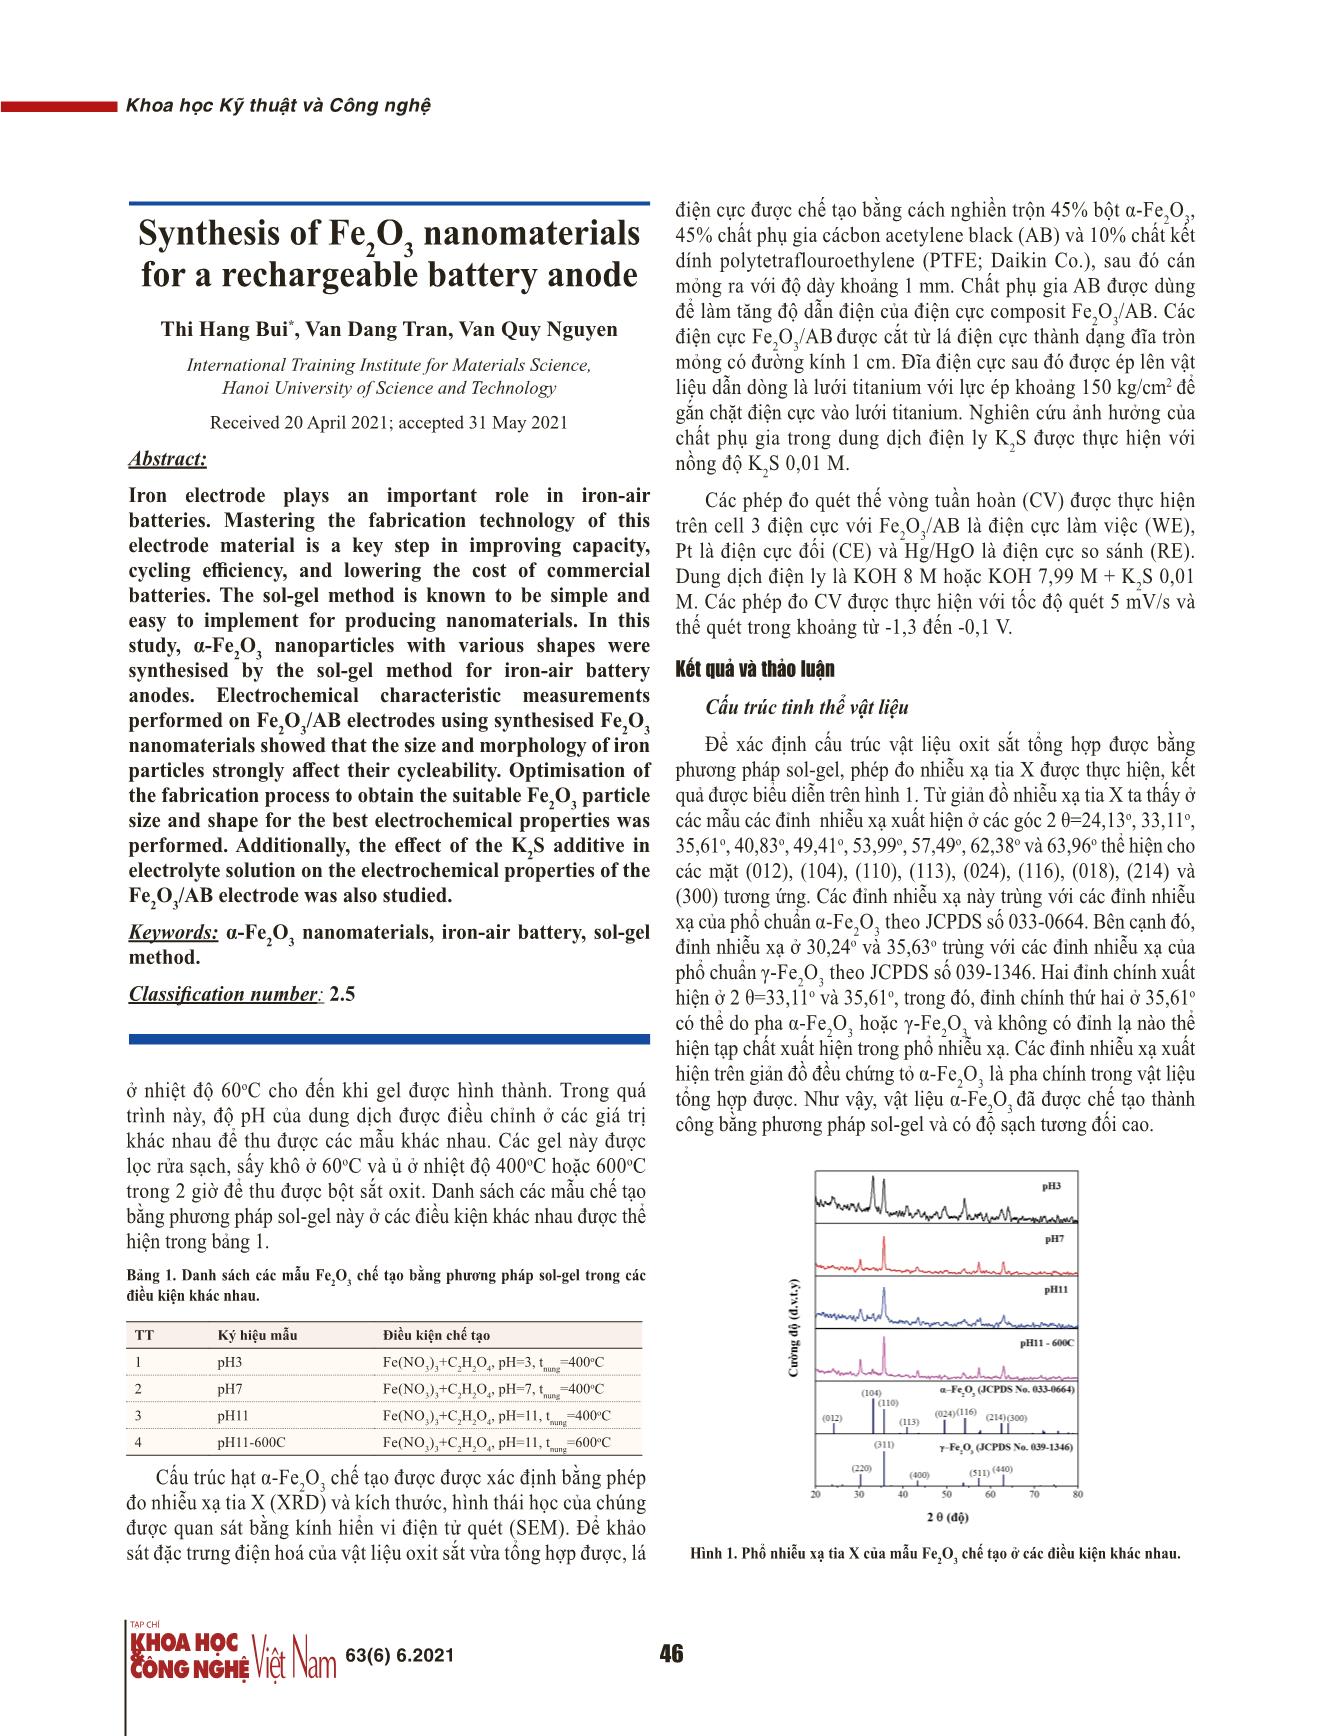 Tổng hợp vật liệu Fe₂O₃ kích thước nanomet ứng dụng làm điện cực âm pin sạc lại trang 2